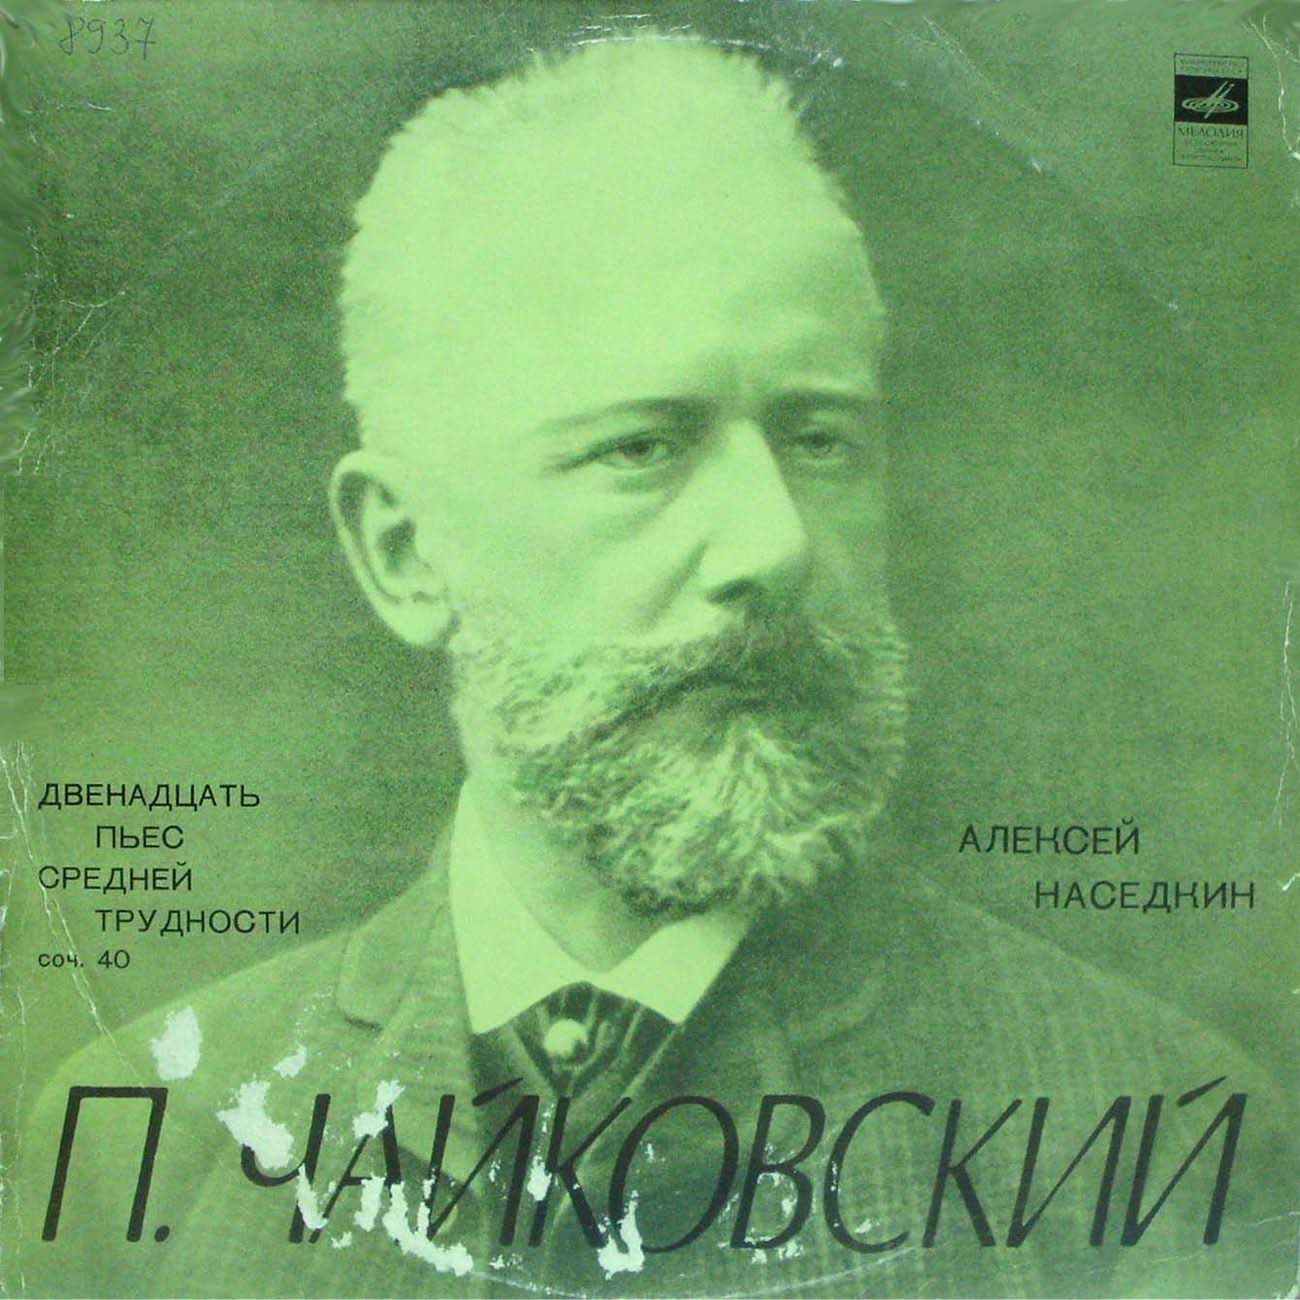 П. ЧАЙКОВСКИЙ (1840–1893) Двенадцать пьес средней трудности для ф-но, соч. 40 (А. Наседкин)